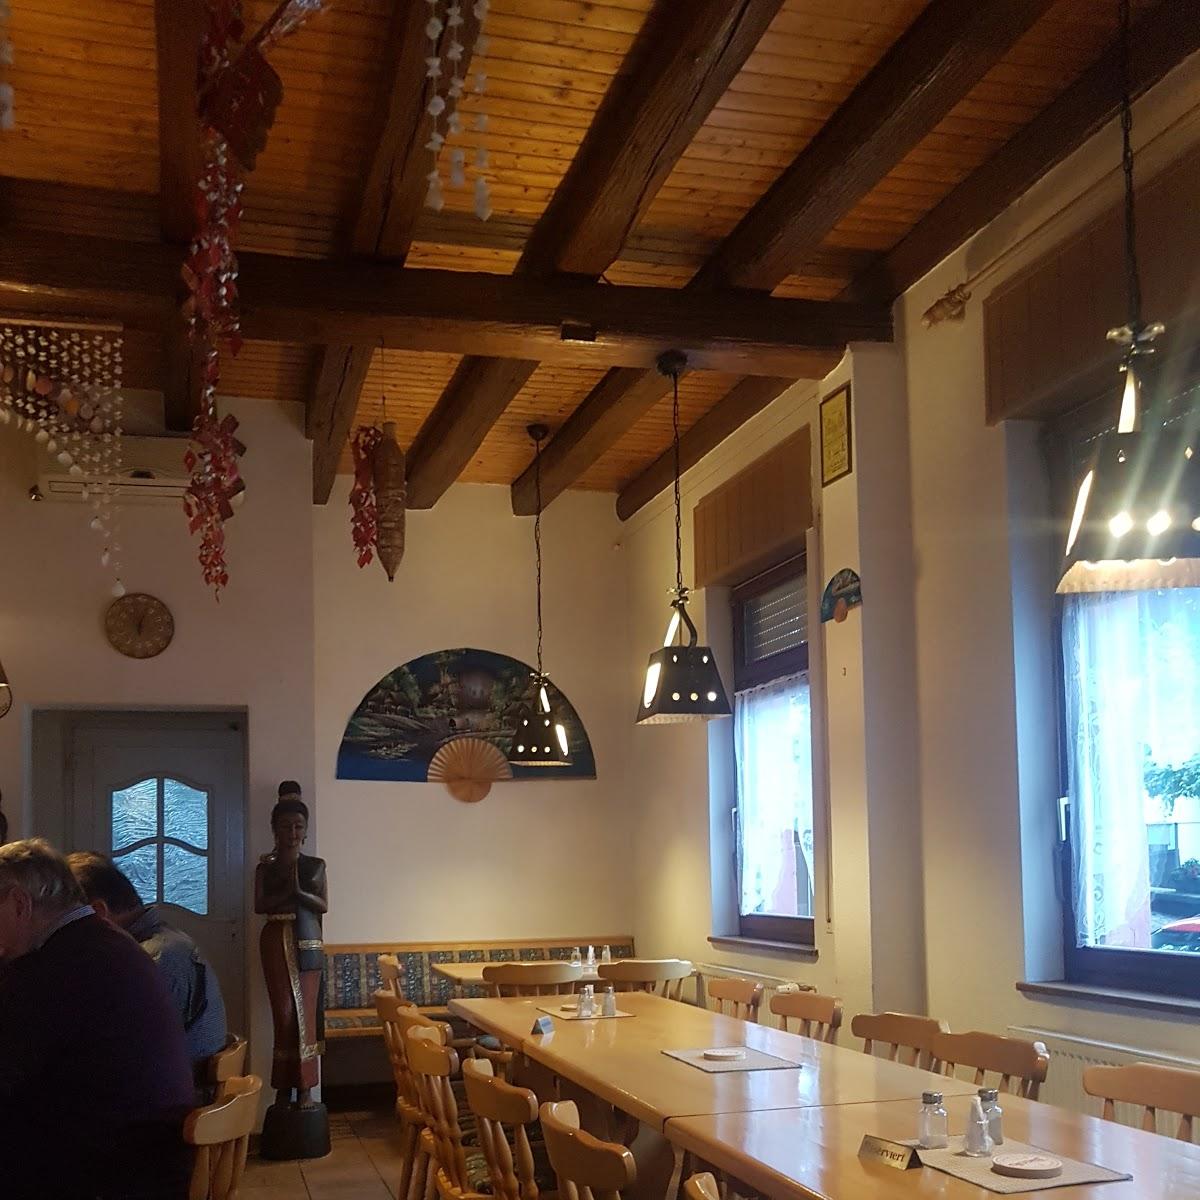 Restaurant "Pens Bier- und Weinstube" in Heuchelheim-Klingen